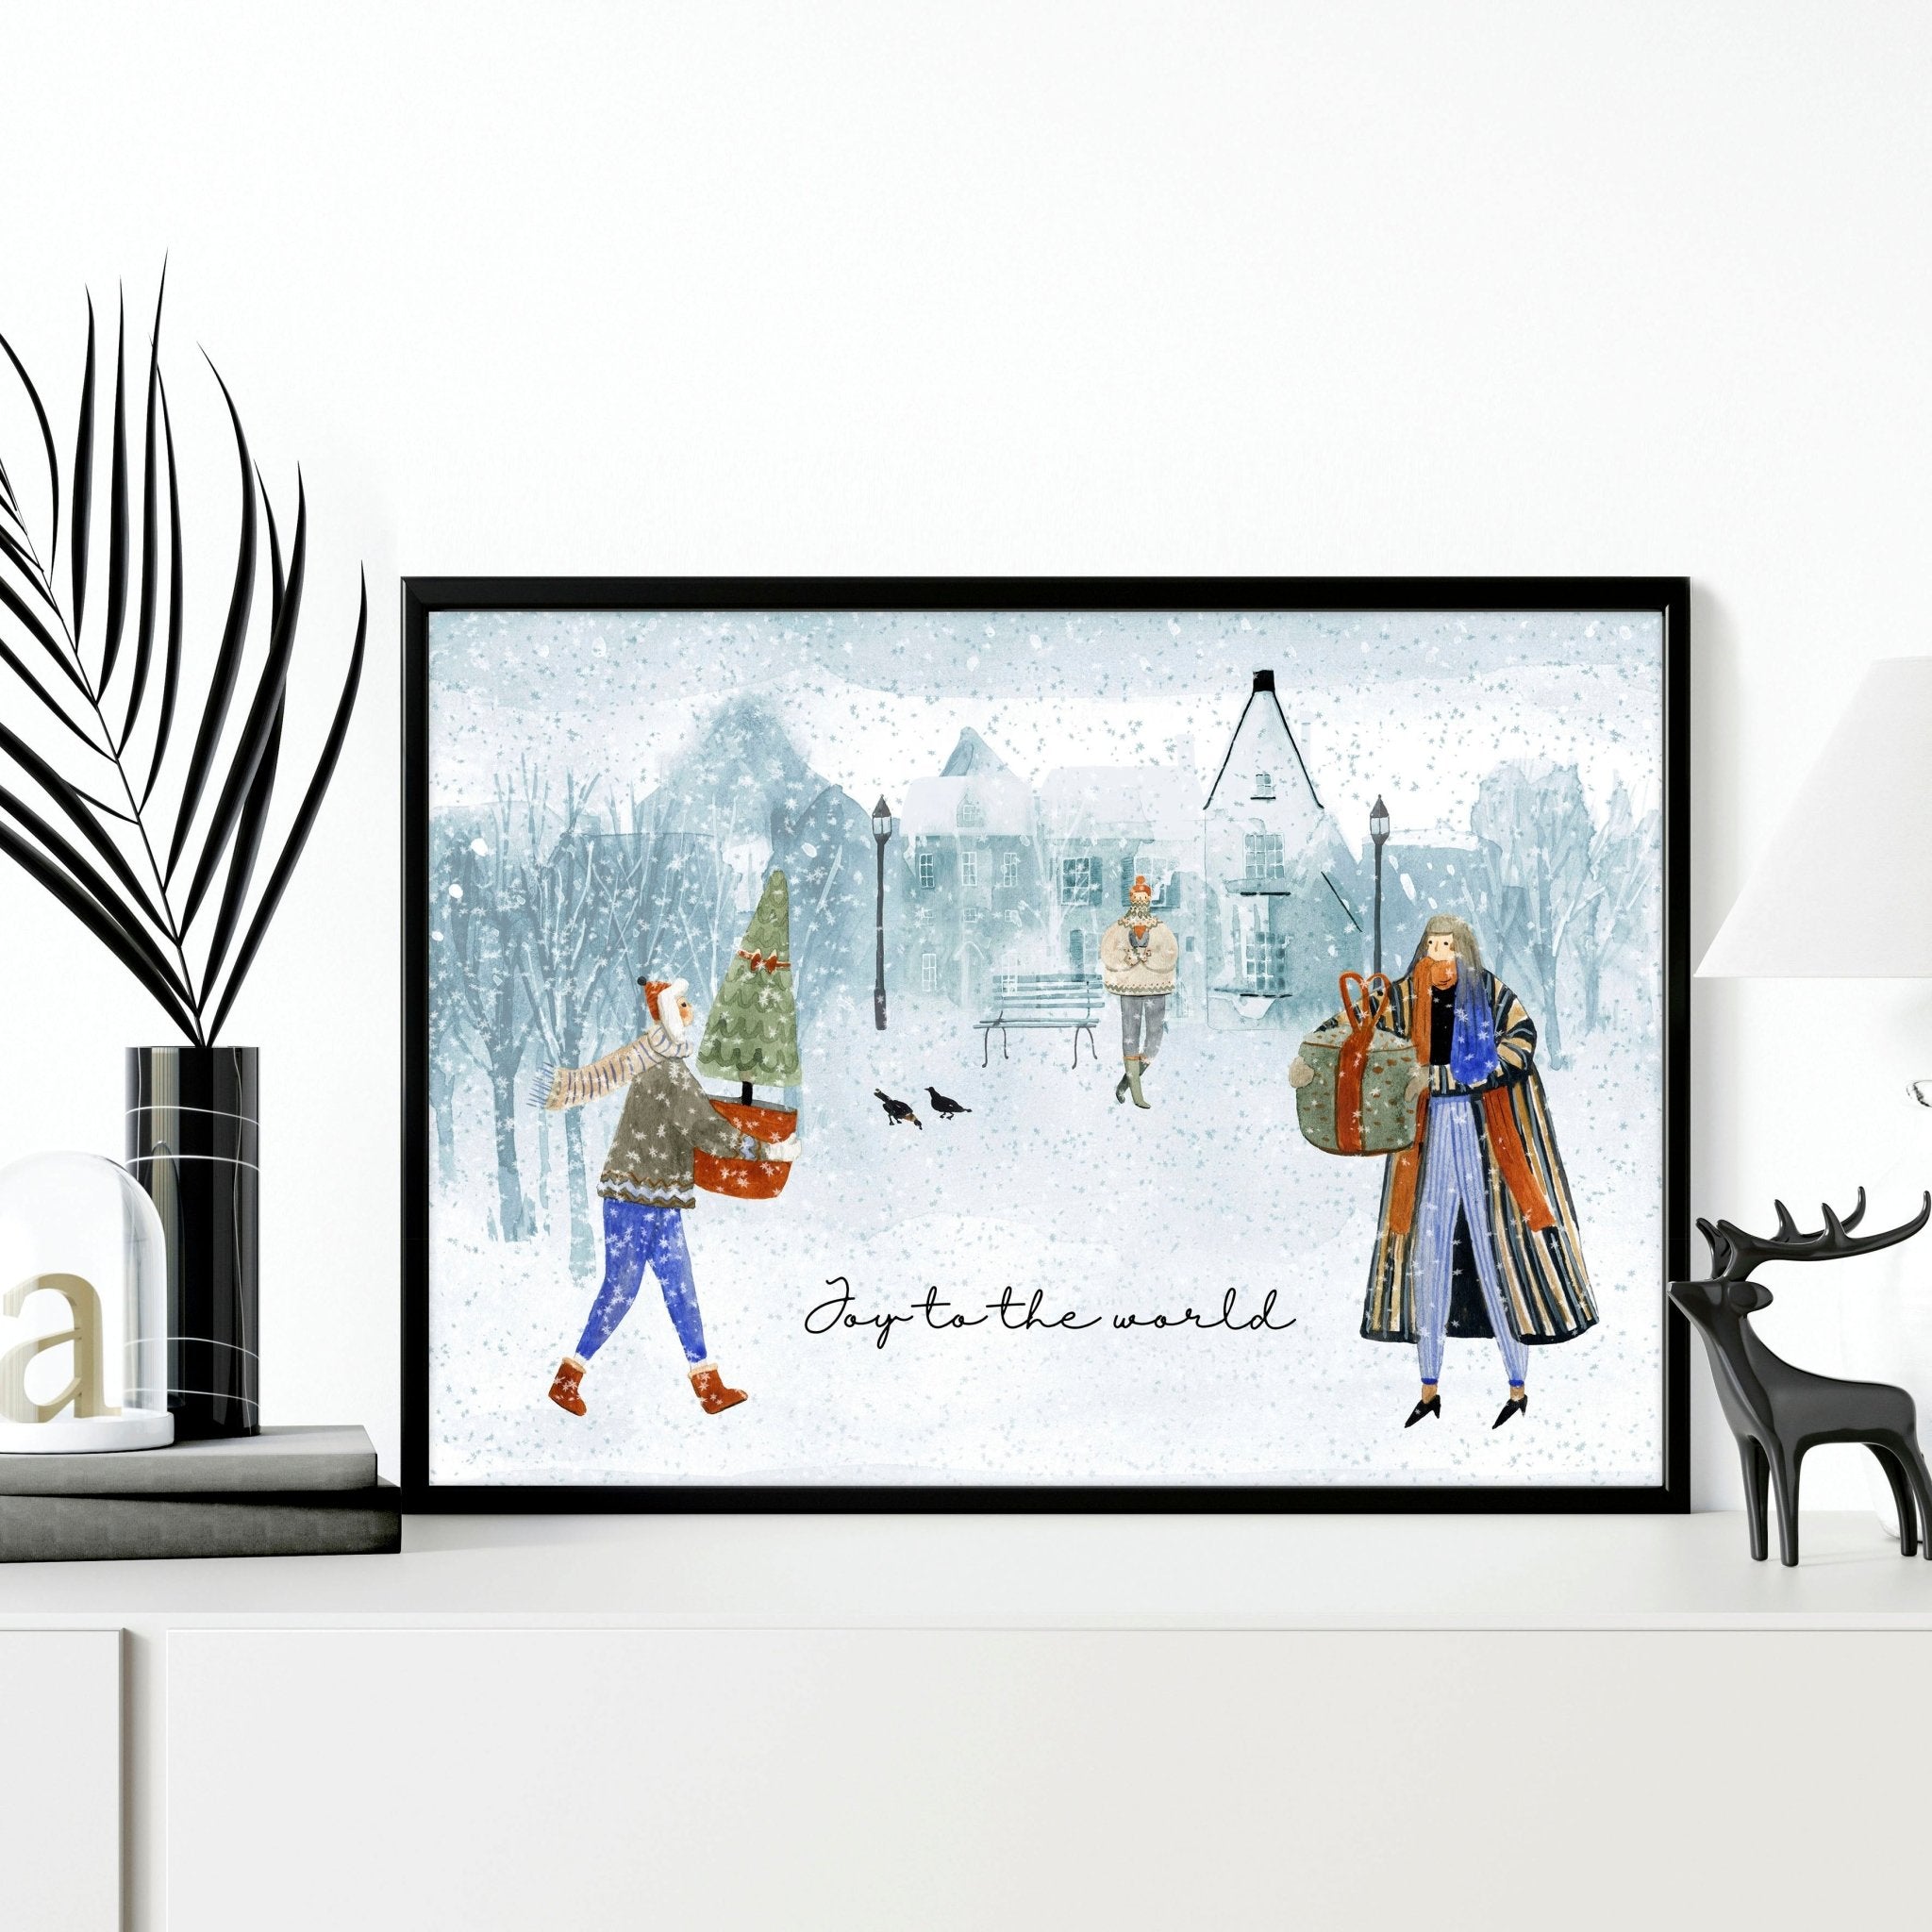 Impresión de arte de pared enmarcada de pueblo navideño escandinavo presente para suegra, decoración navideña para mamá o abuela, regalo secreto de Navidad de Papá Noel